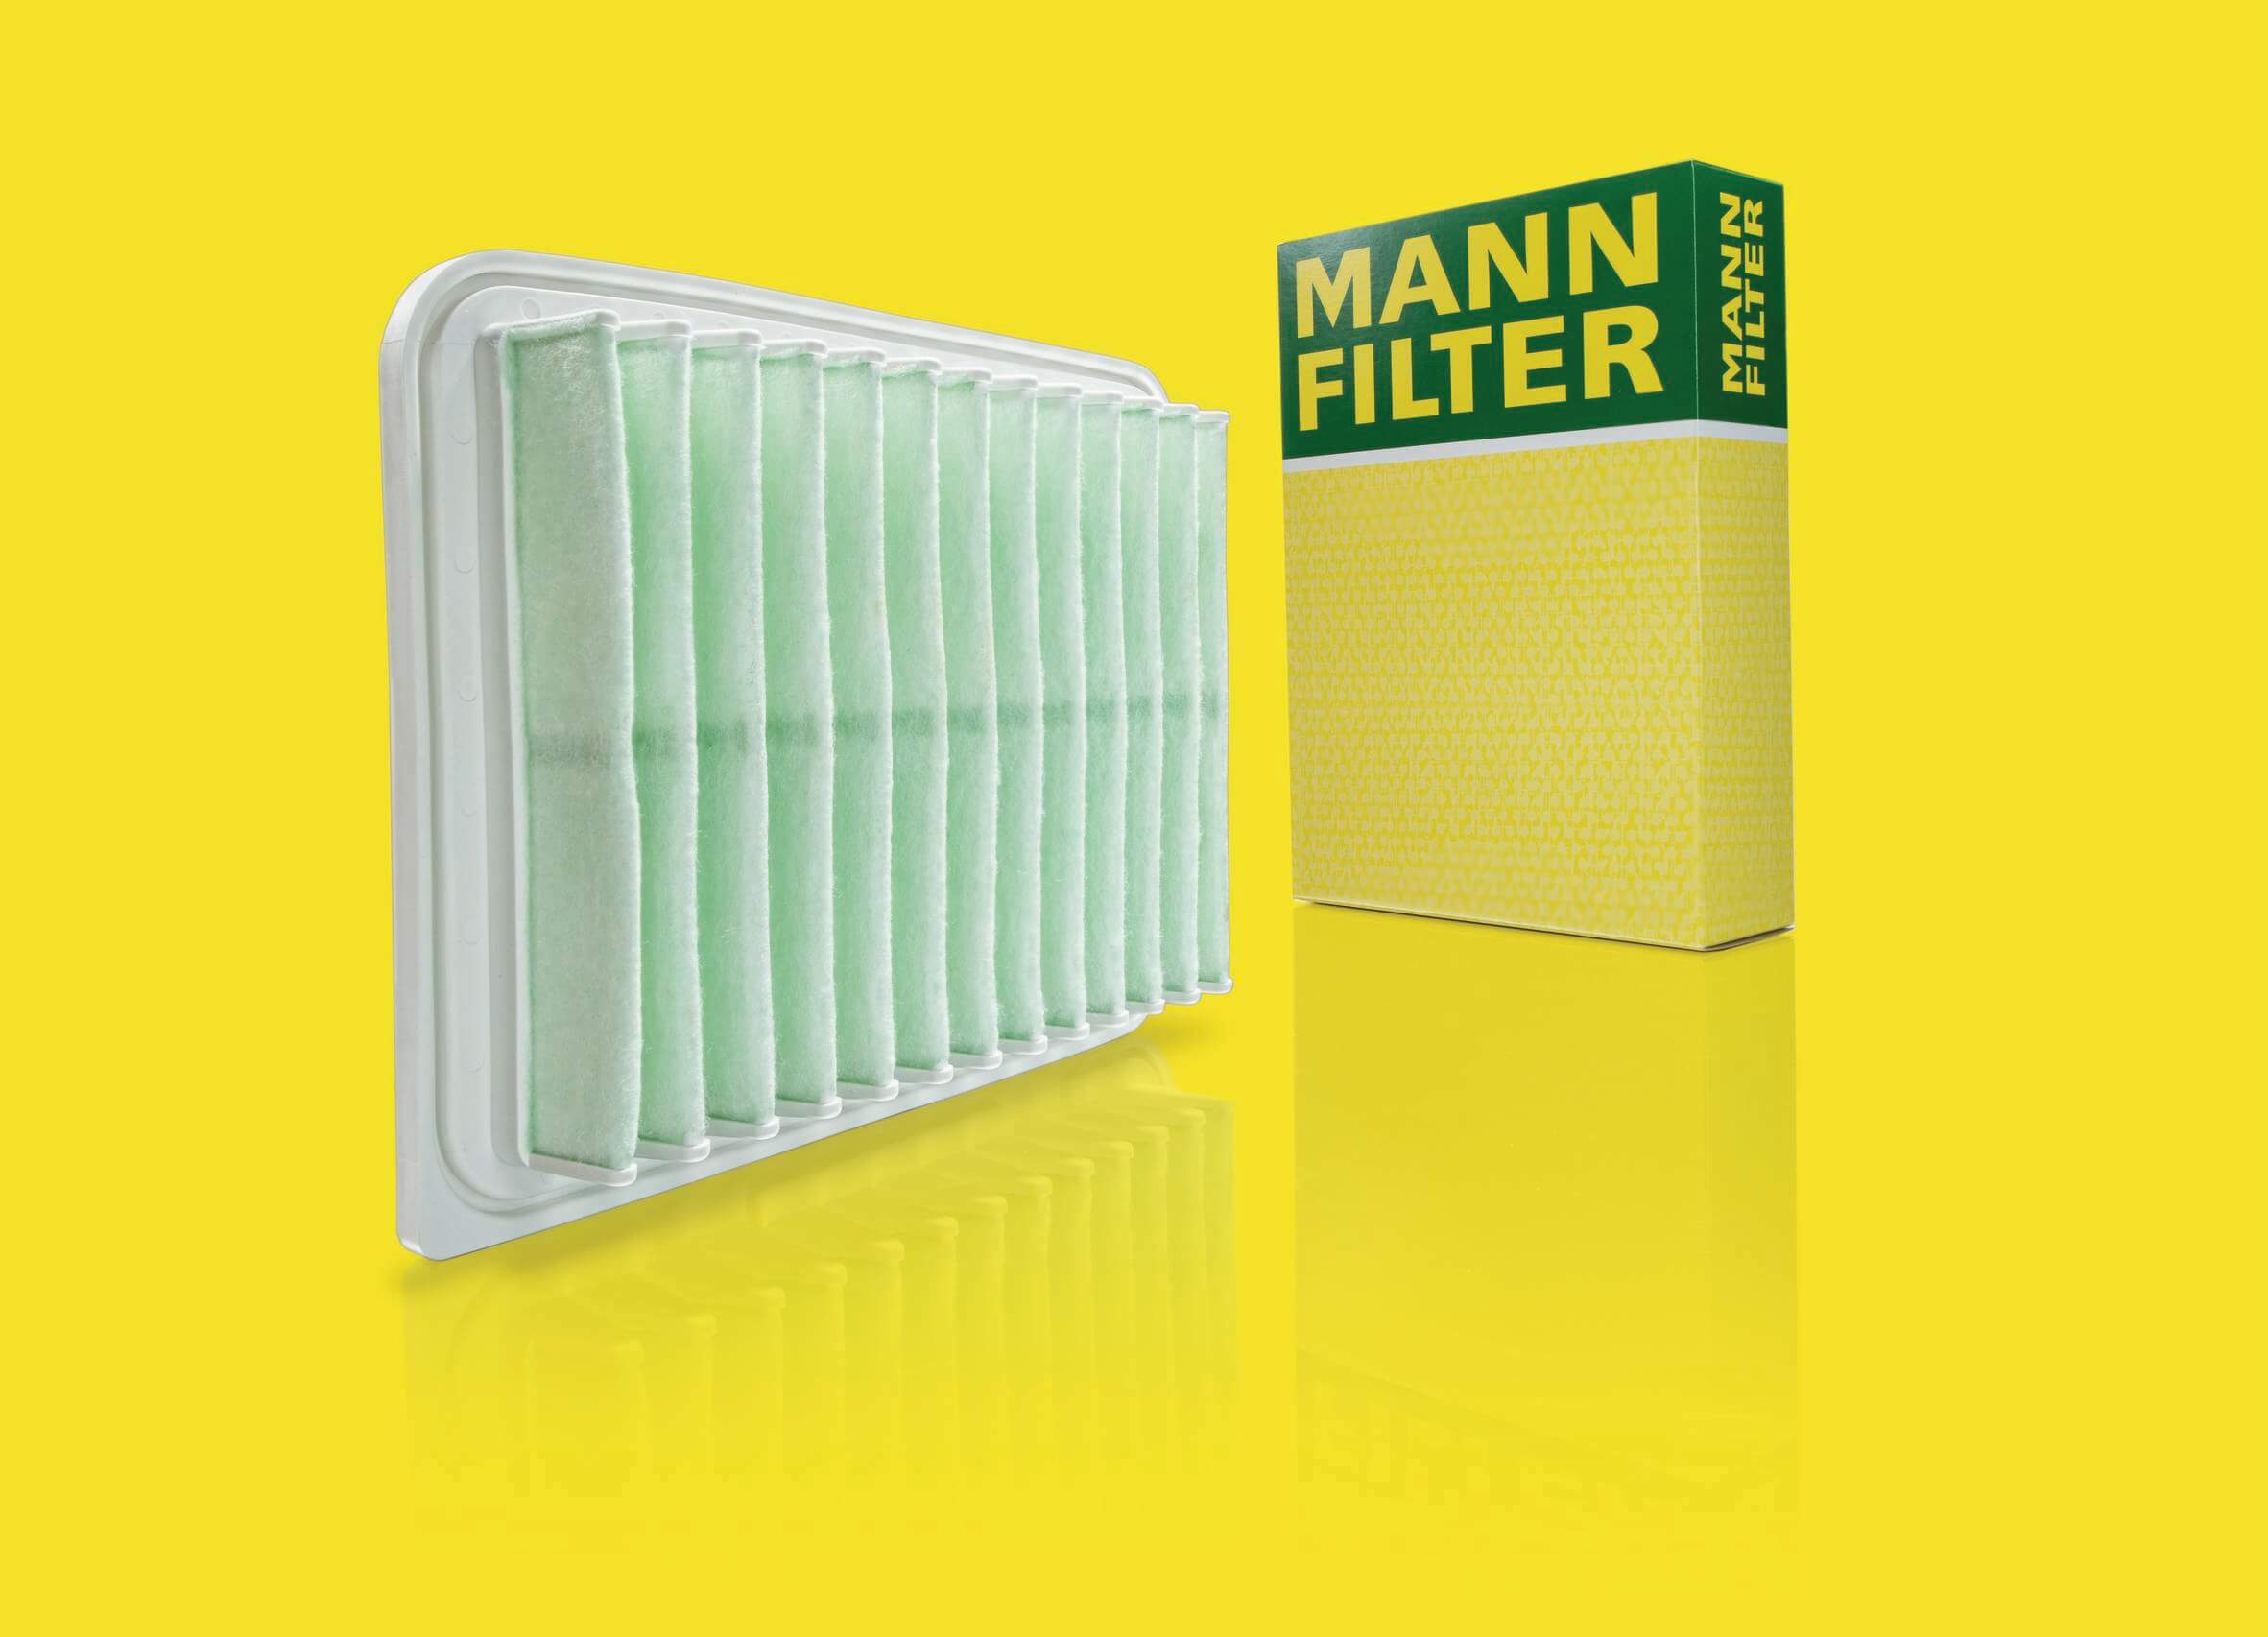 Φίλτρα αέρα MANN-FILTER κατασκευασμένα από ανακυκλωμένο πλαστικό